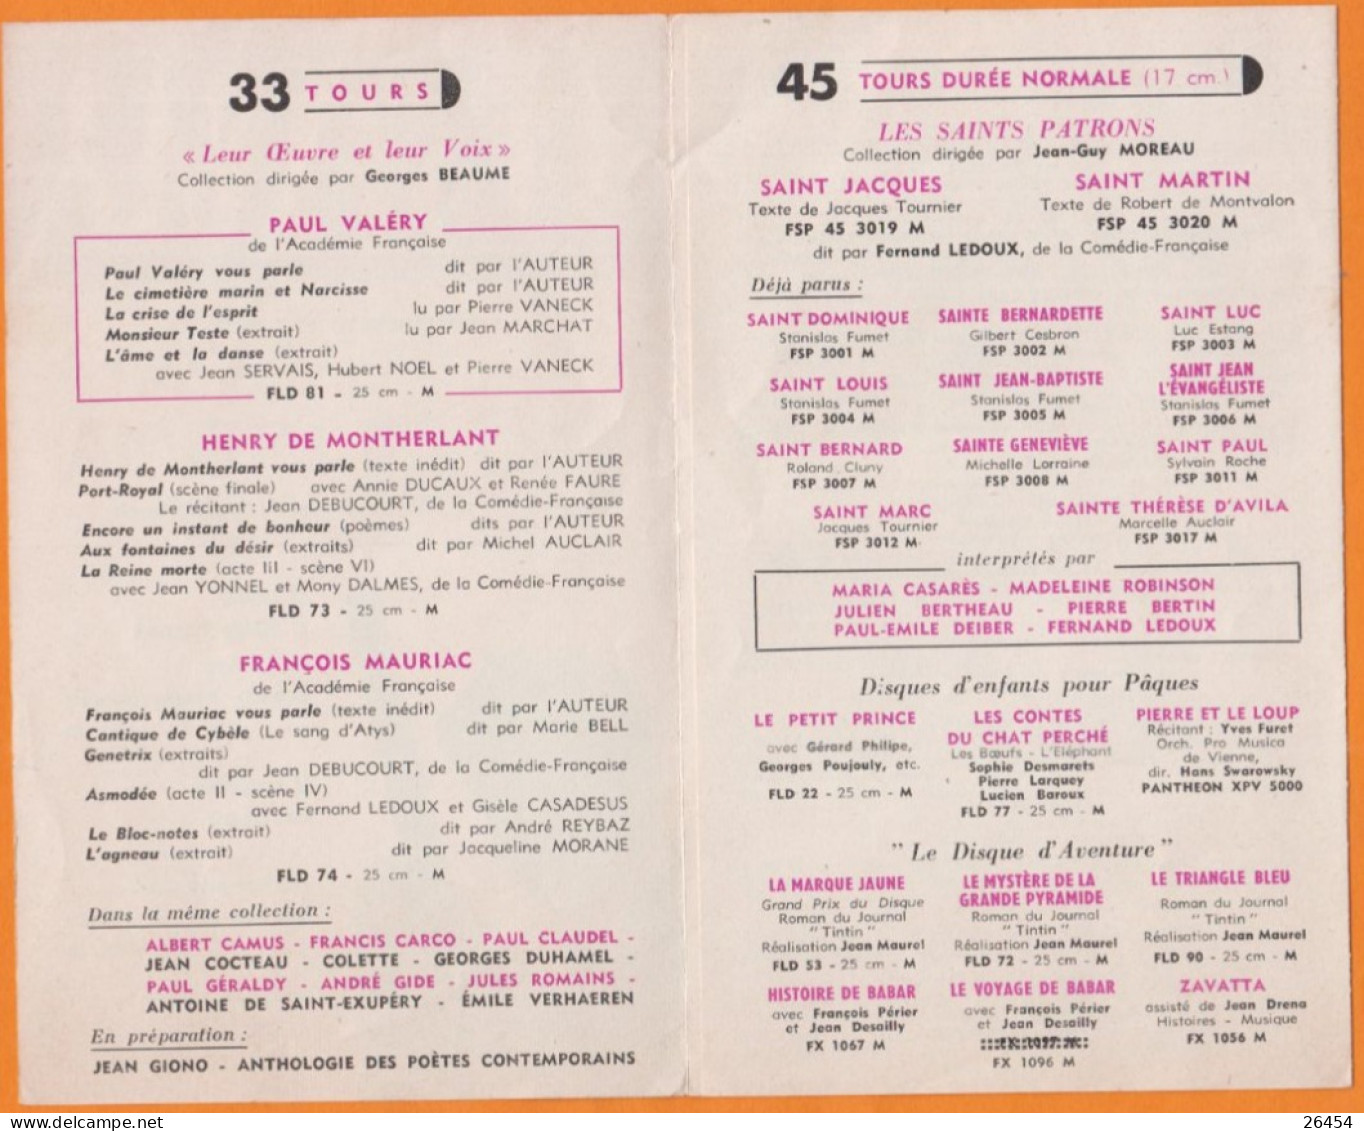 NINO DE MURCIA   Dépliant Musical  " FESTIVAL "  Chant Et Guitare FLAMENCO  Année 1957  +  Autres 45t Et 33t - Chansonniers